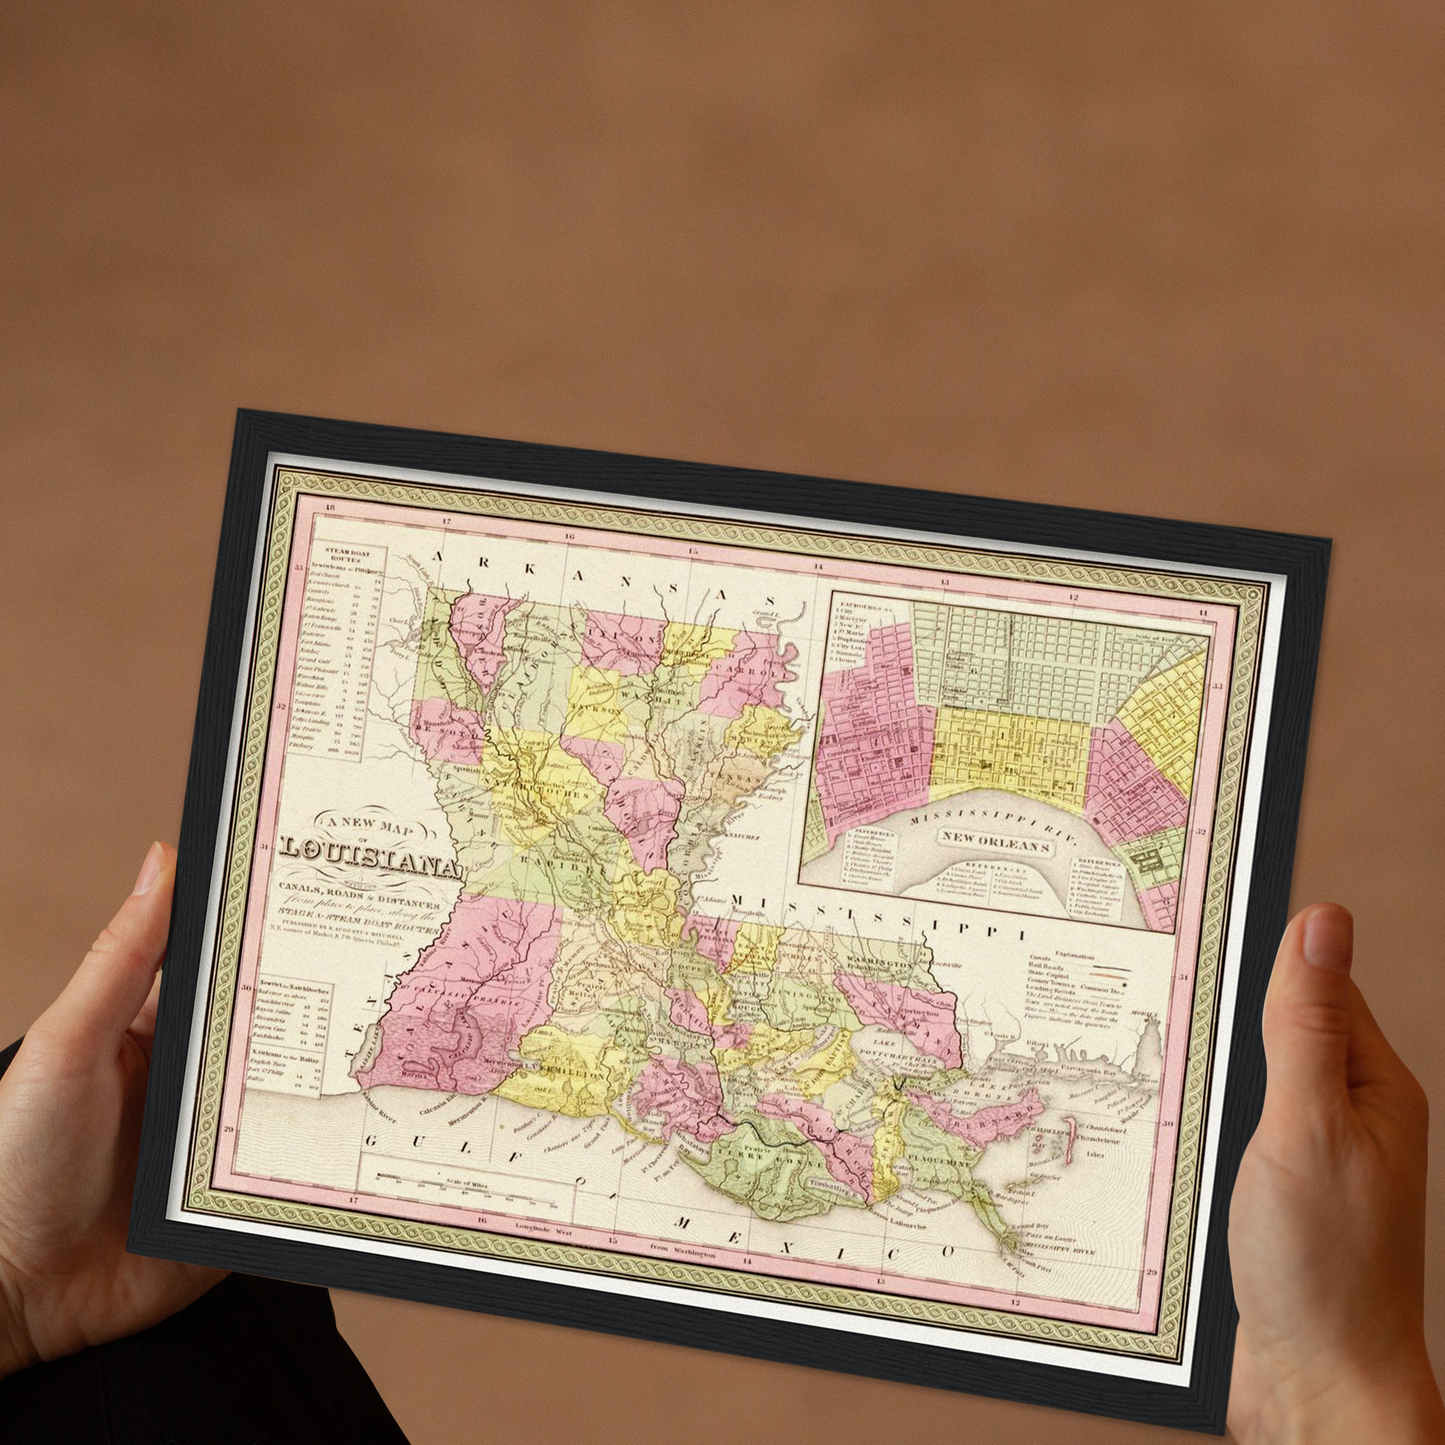 Historische Landkarte Louisiana um 1849